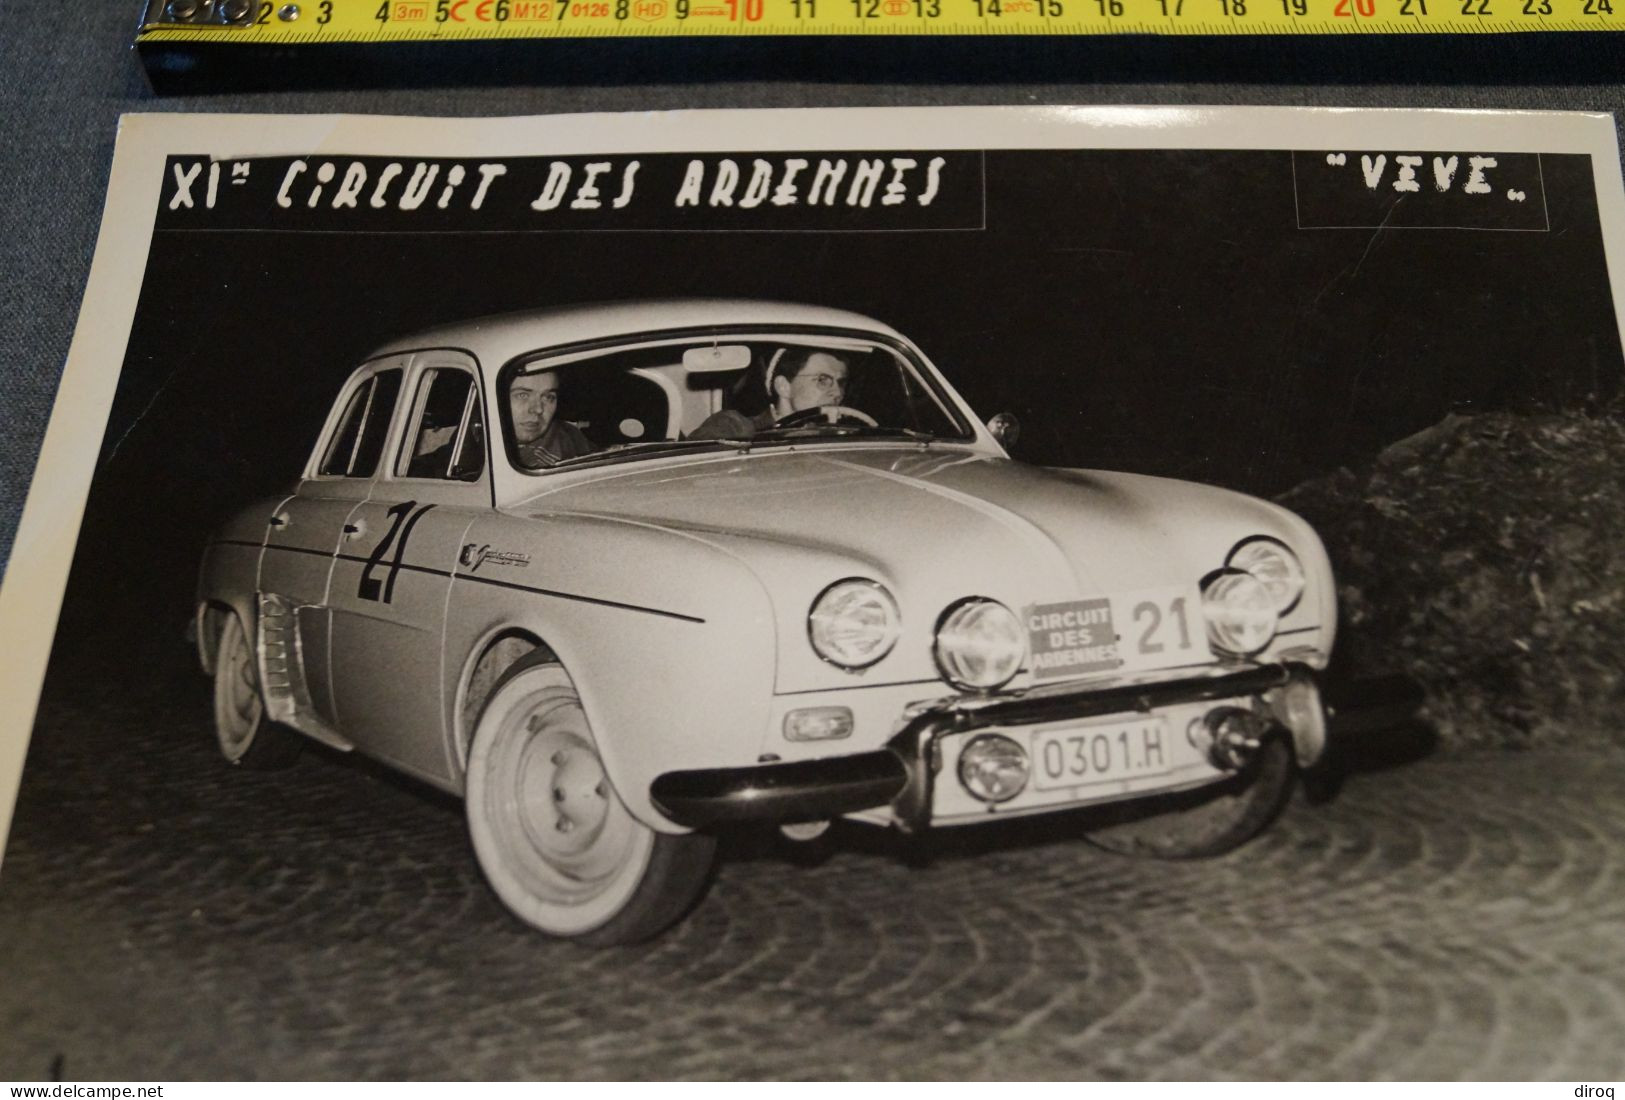 11 Iem Rallye Des Ardennes,grande Photo Originale, 24 Cm. Sur 18 Cm. - Cars